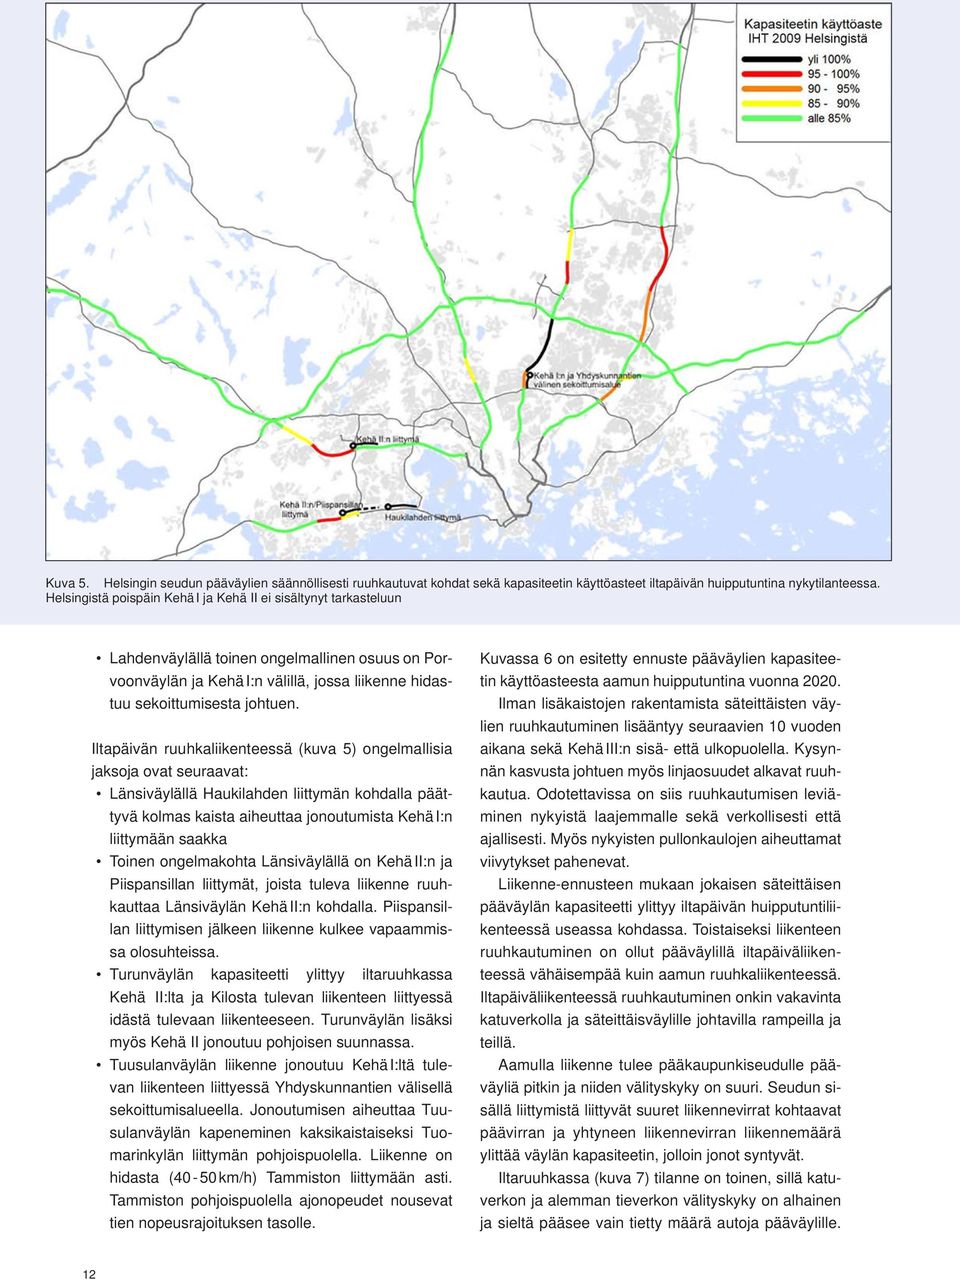 Iltapäivän ruuhkaliikenteessä (kuva 5) ongelmallisia jaksoja ovat seuraavat: Länsiväylällä Haukilahden liittymän kohdalla päättyvä kolmas kaista aiheuttaa jonoutumista Kehä I:n liittymään saakka